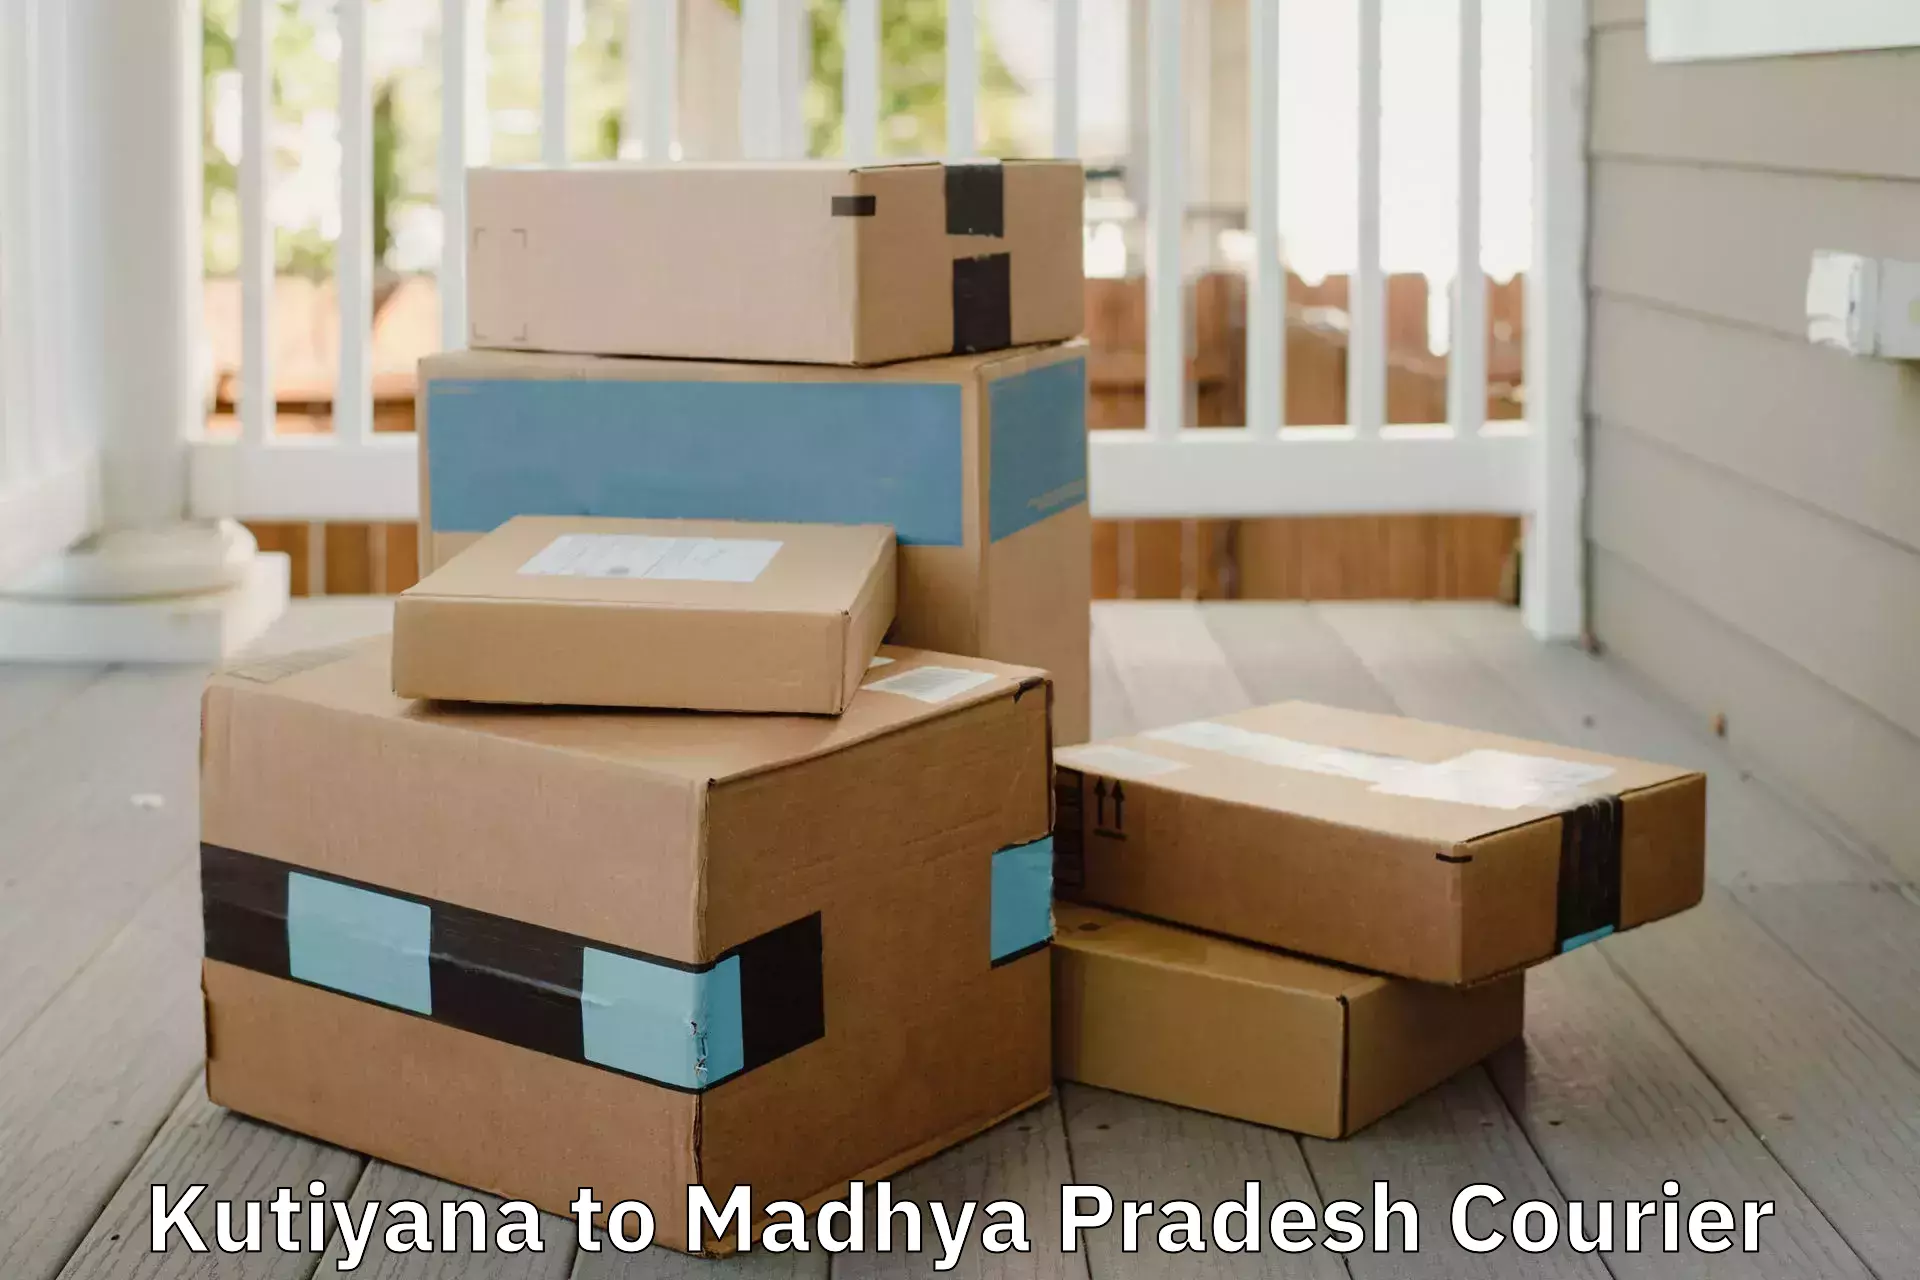 Furniture moving service Kutiyana to Madhya Pradesh